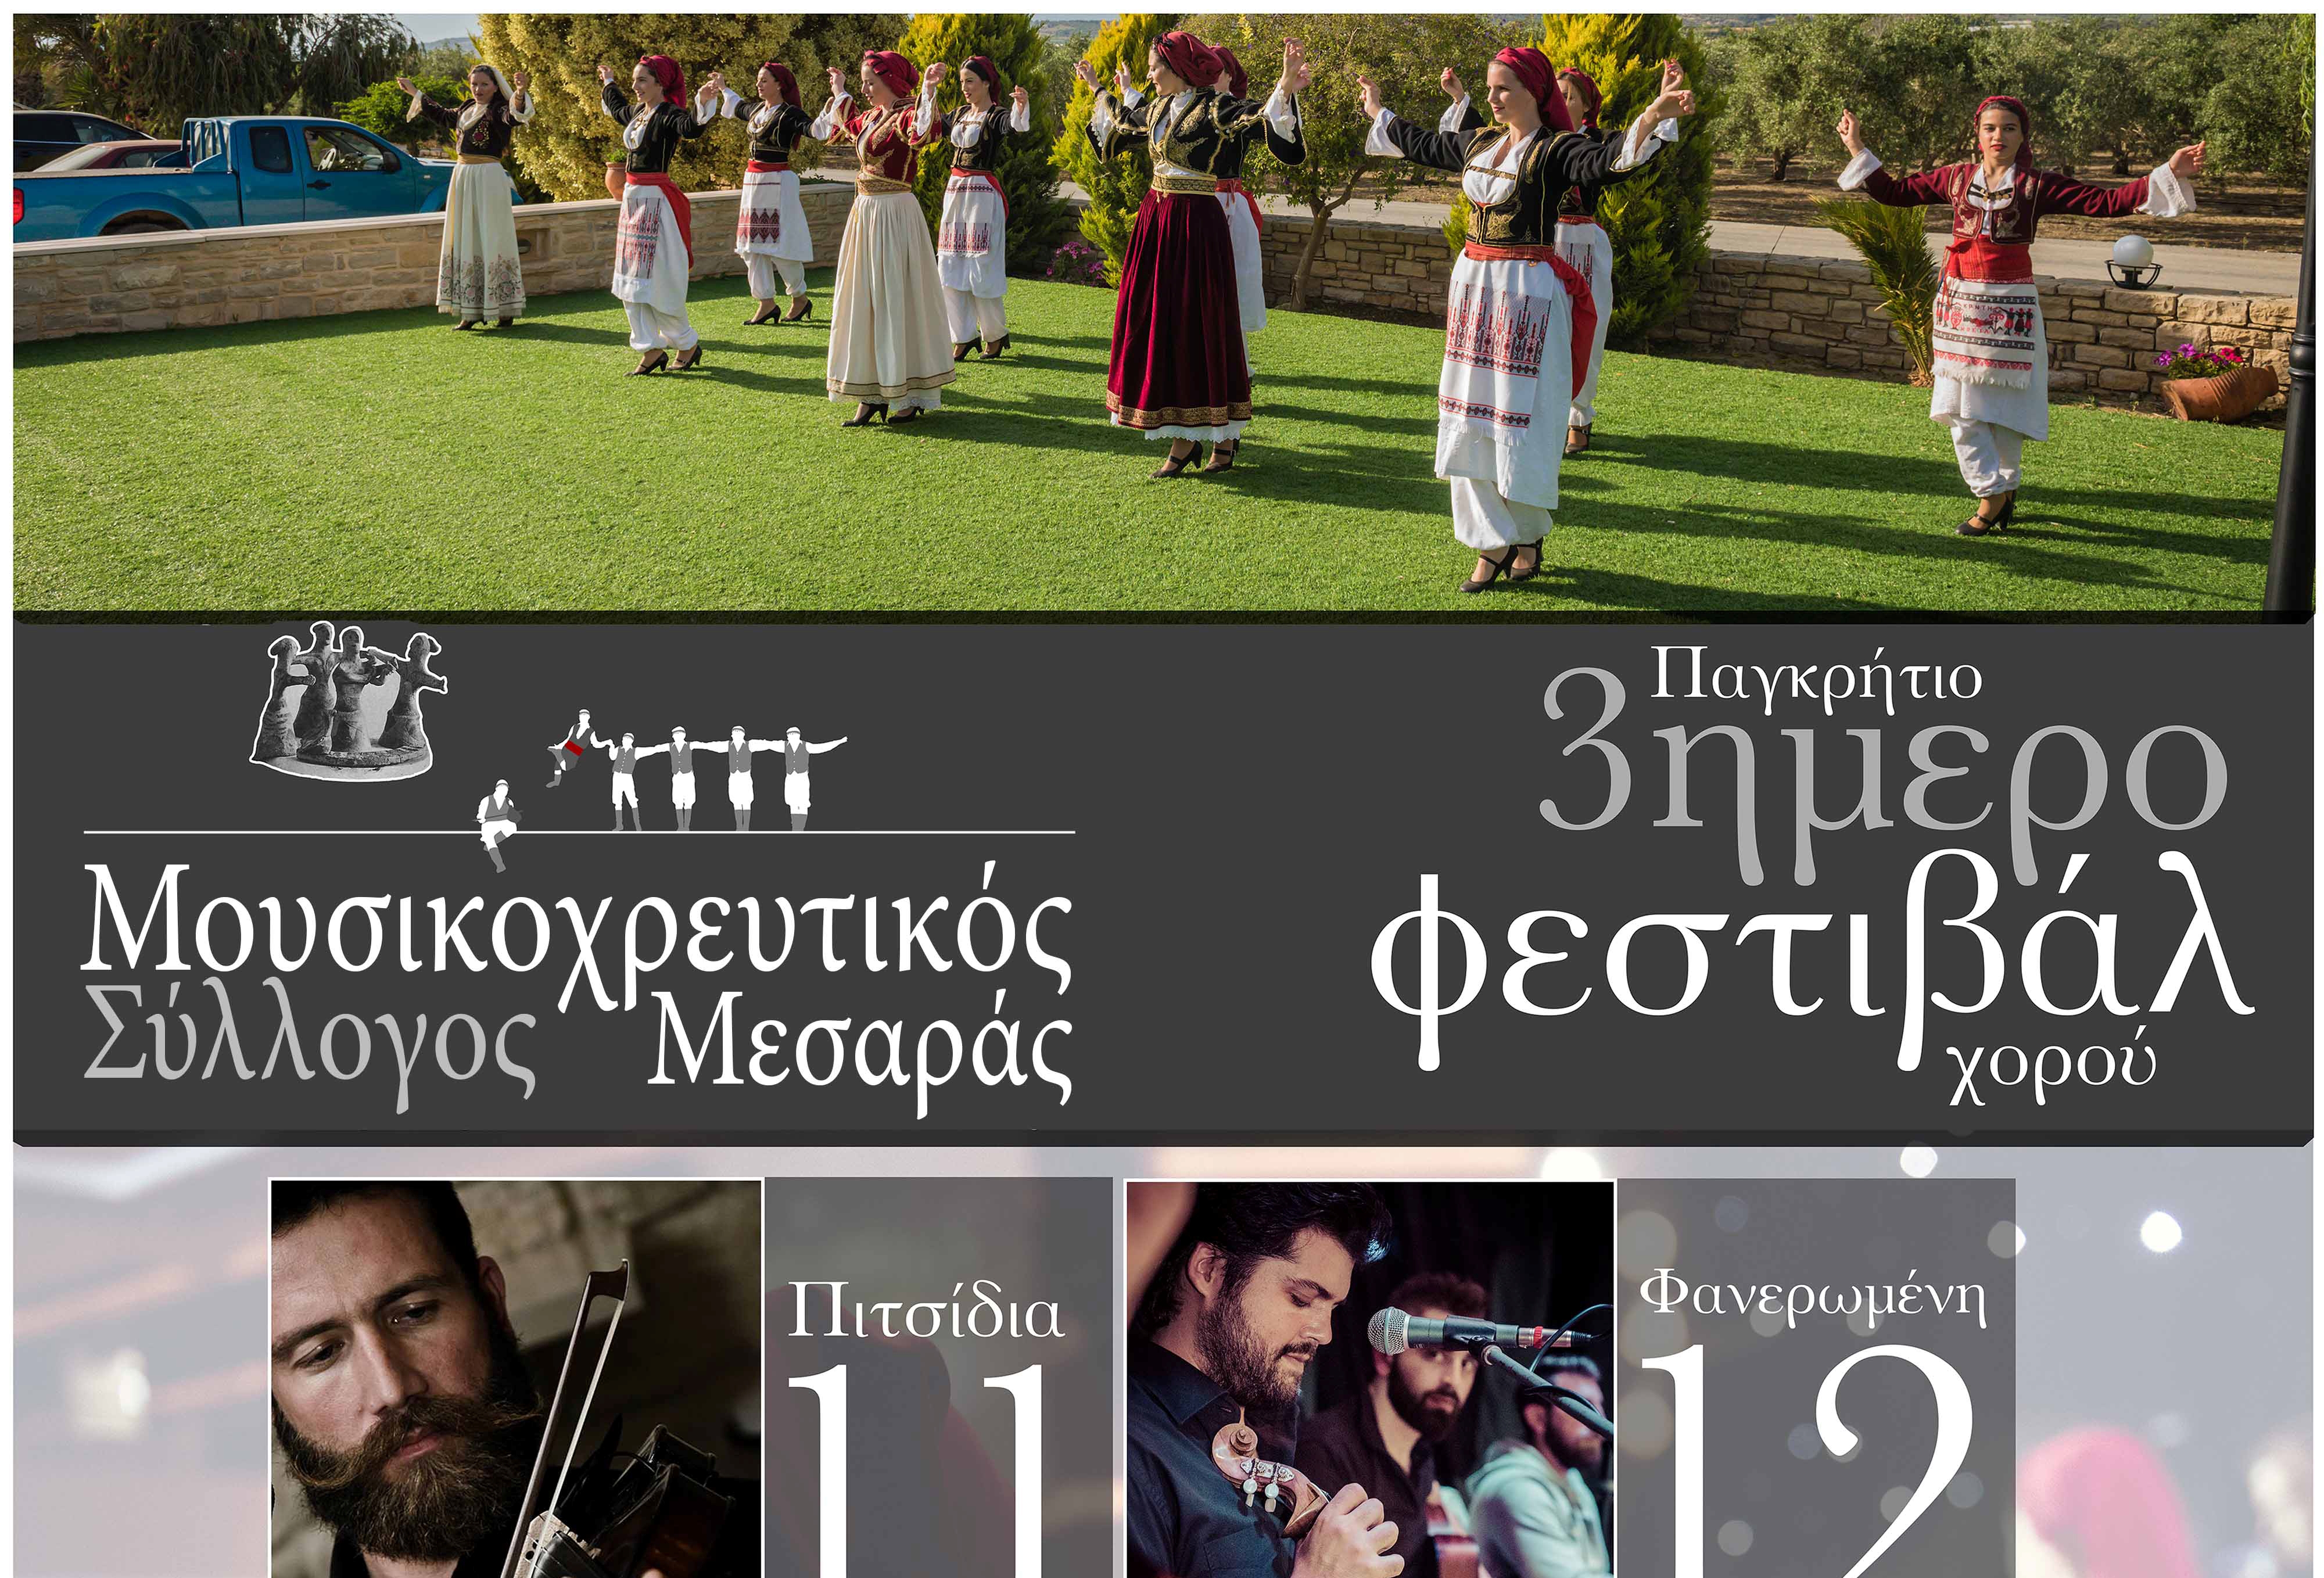 3ημερο Πανελλήνιο Φεστιβάλ Χορού από τον μουσικοχορευτικό σύλλογο Μεσαράς